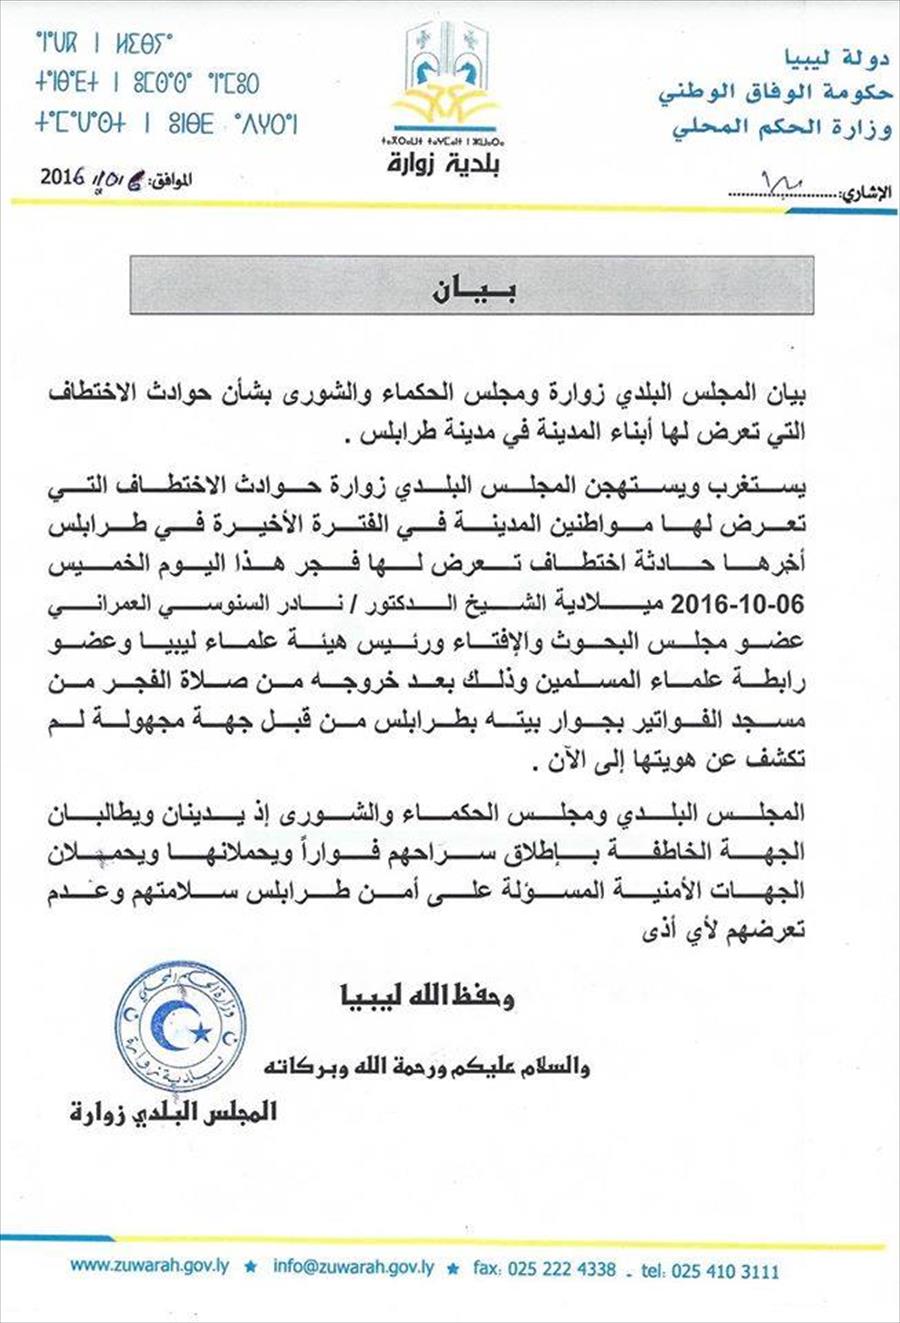 بلدية زوارة تدين حوادث الخطف في طرابلس وتدعو لإطلاق سراح العمراني